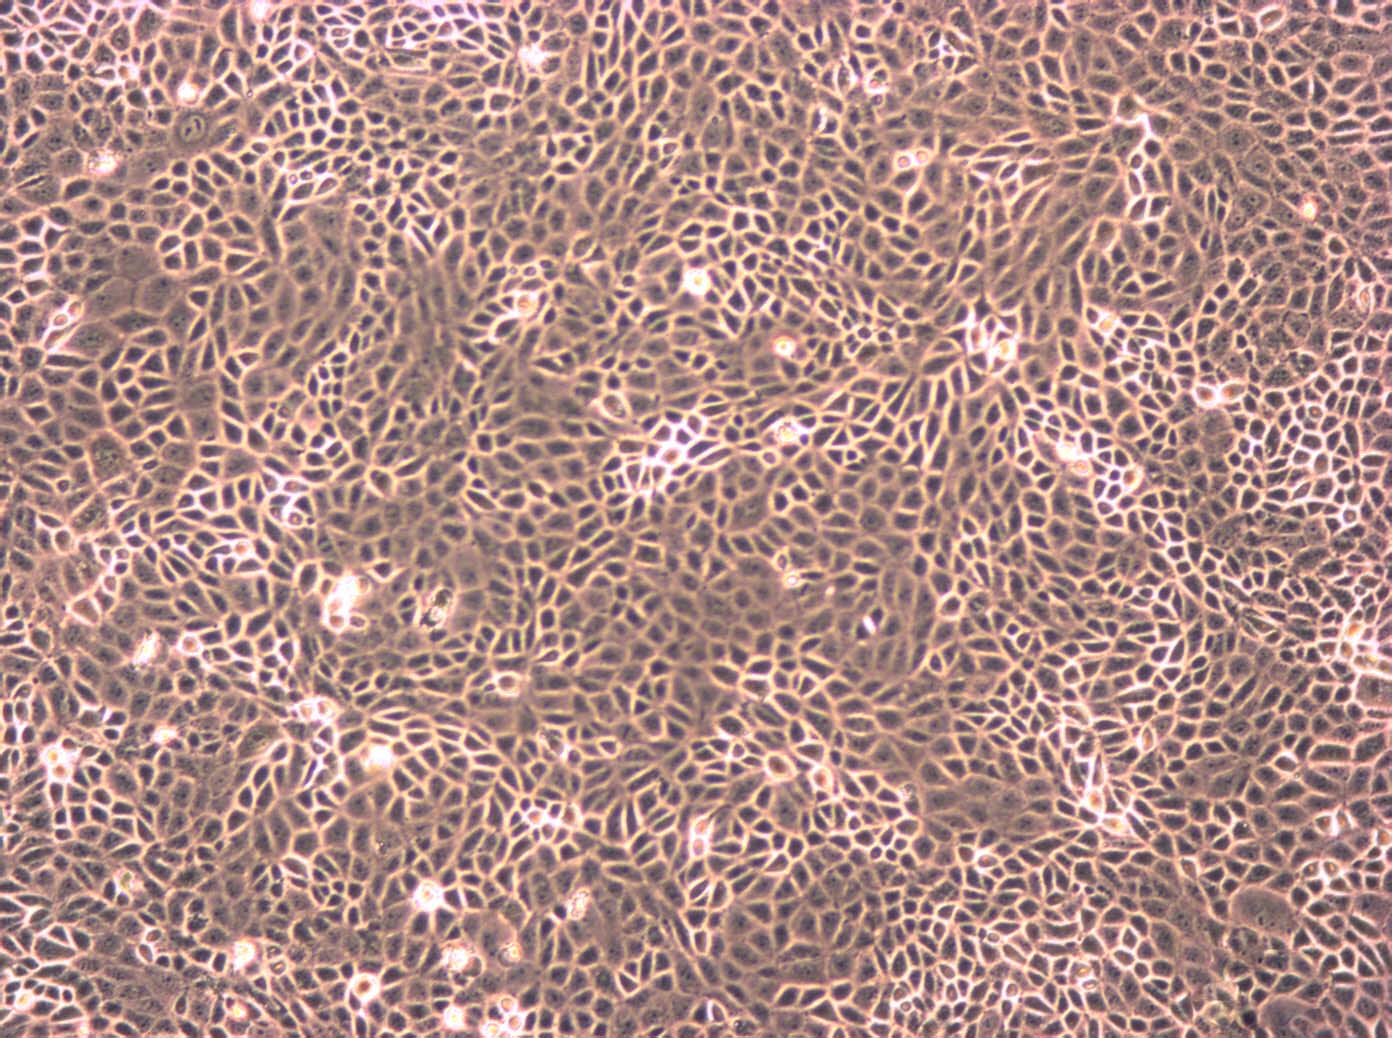 MDA-MB-453 Thawing人乳腺癌细胞系,MDA-MB-453 Thawing